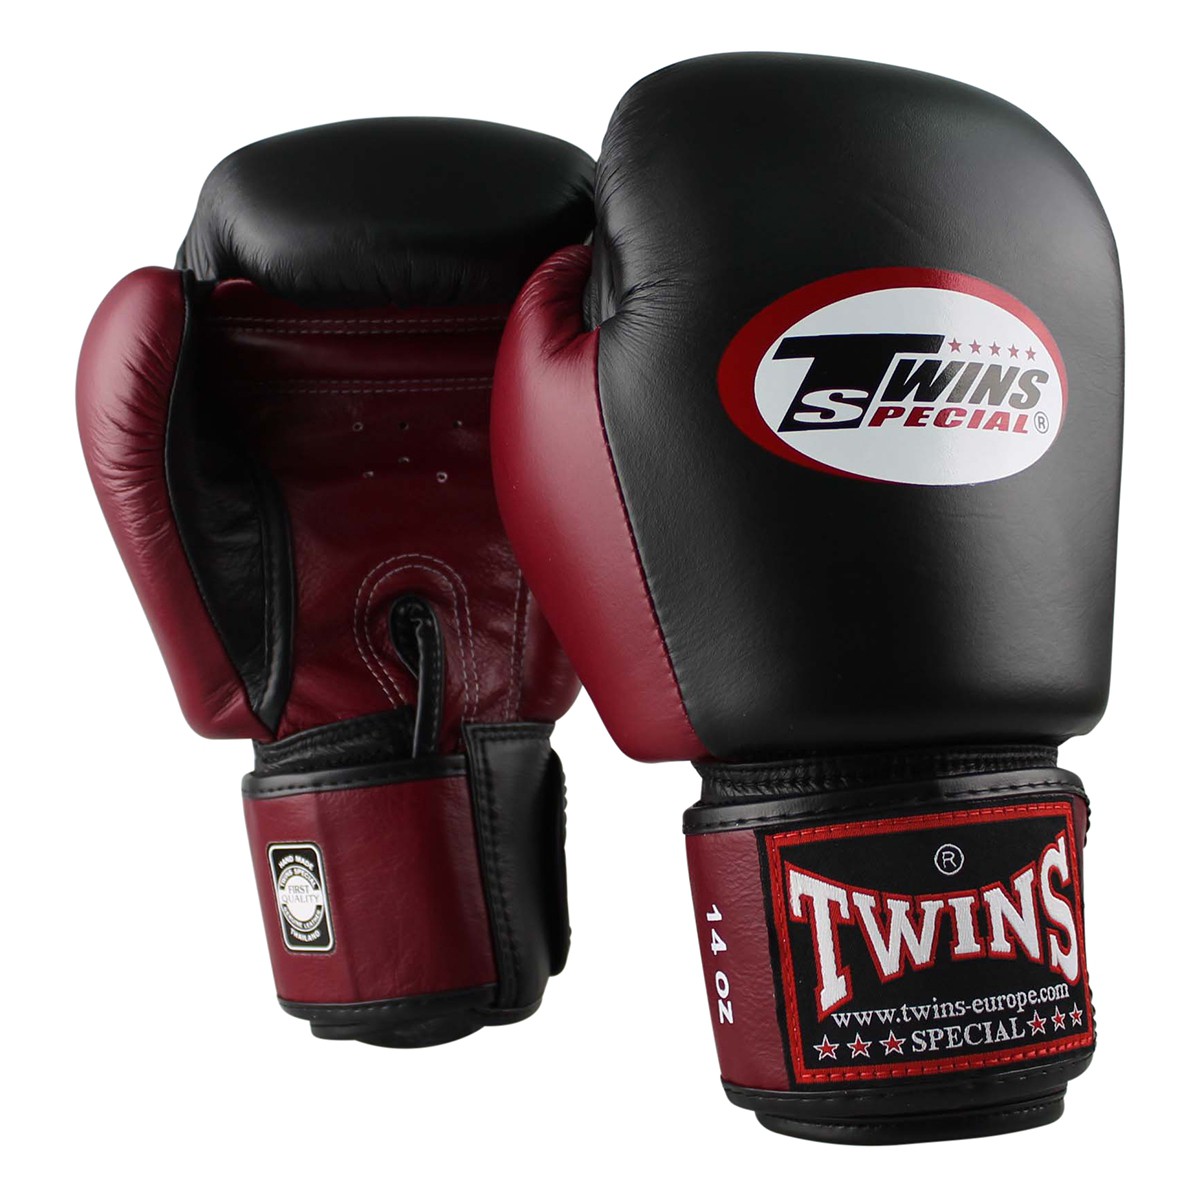 Matériel de Boxe Twins : Gants de Boxe Thai, Protections, gants twins